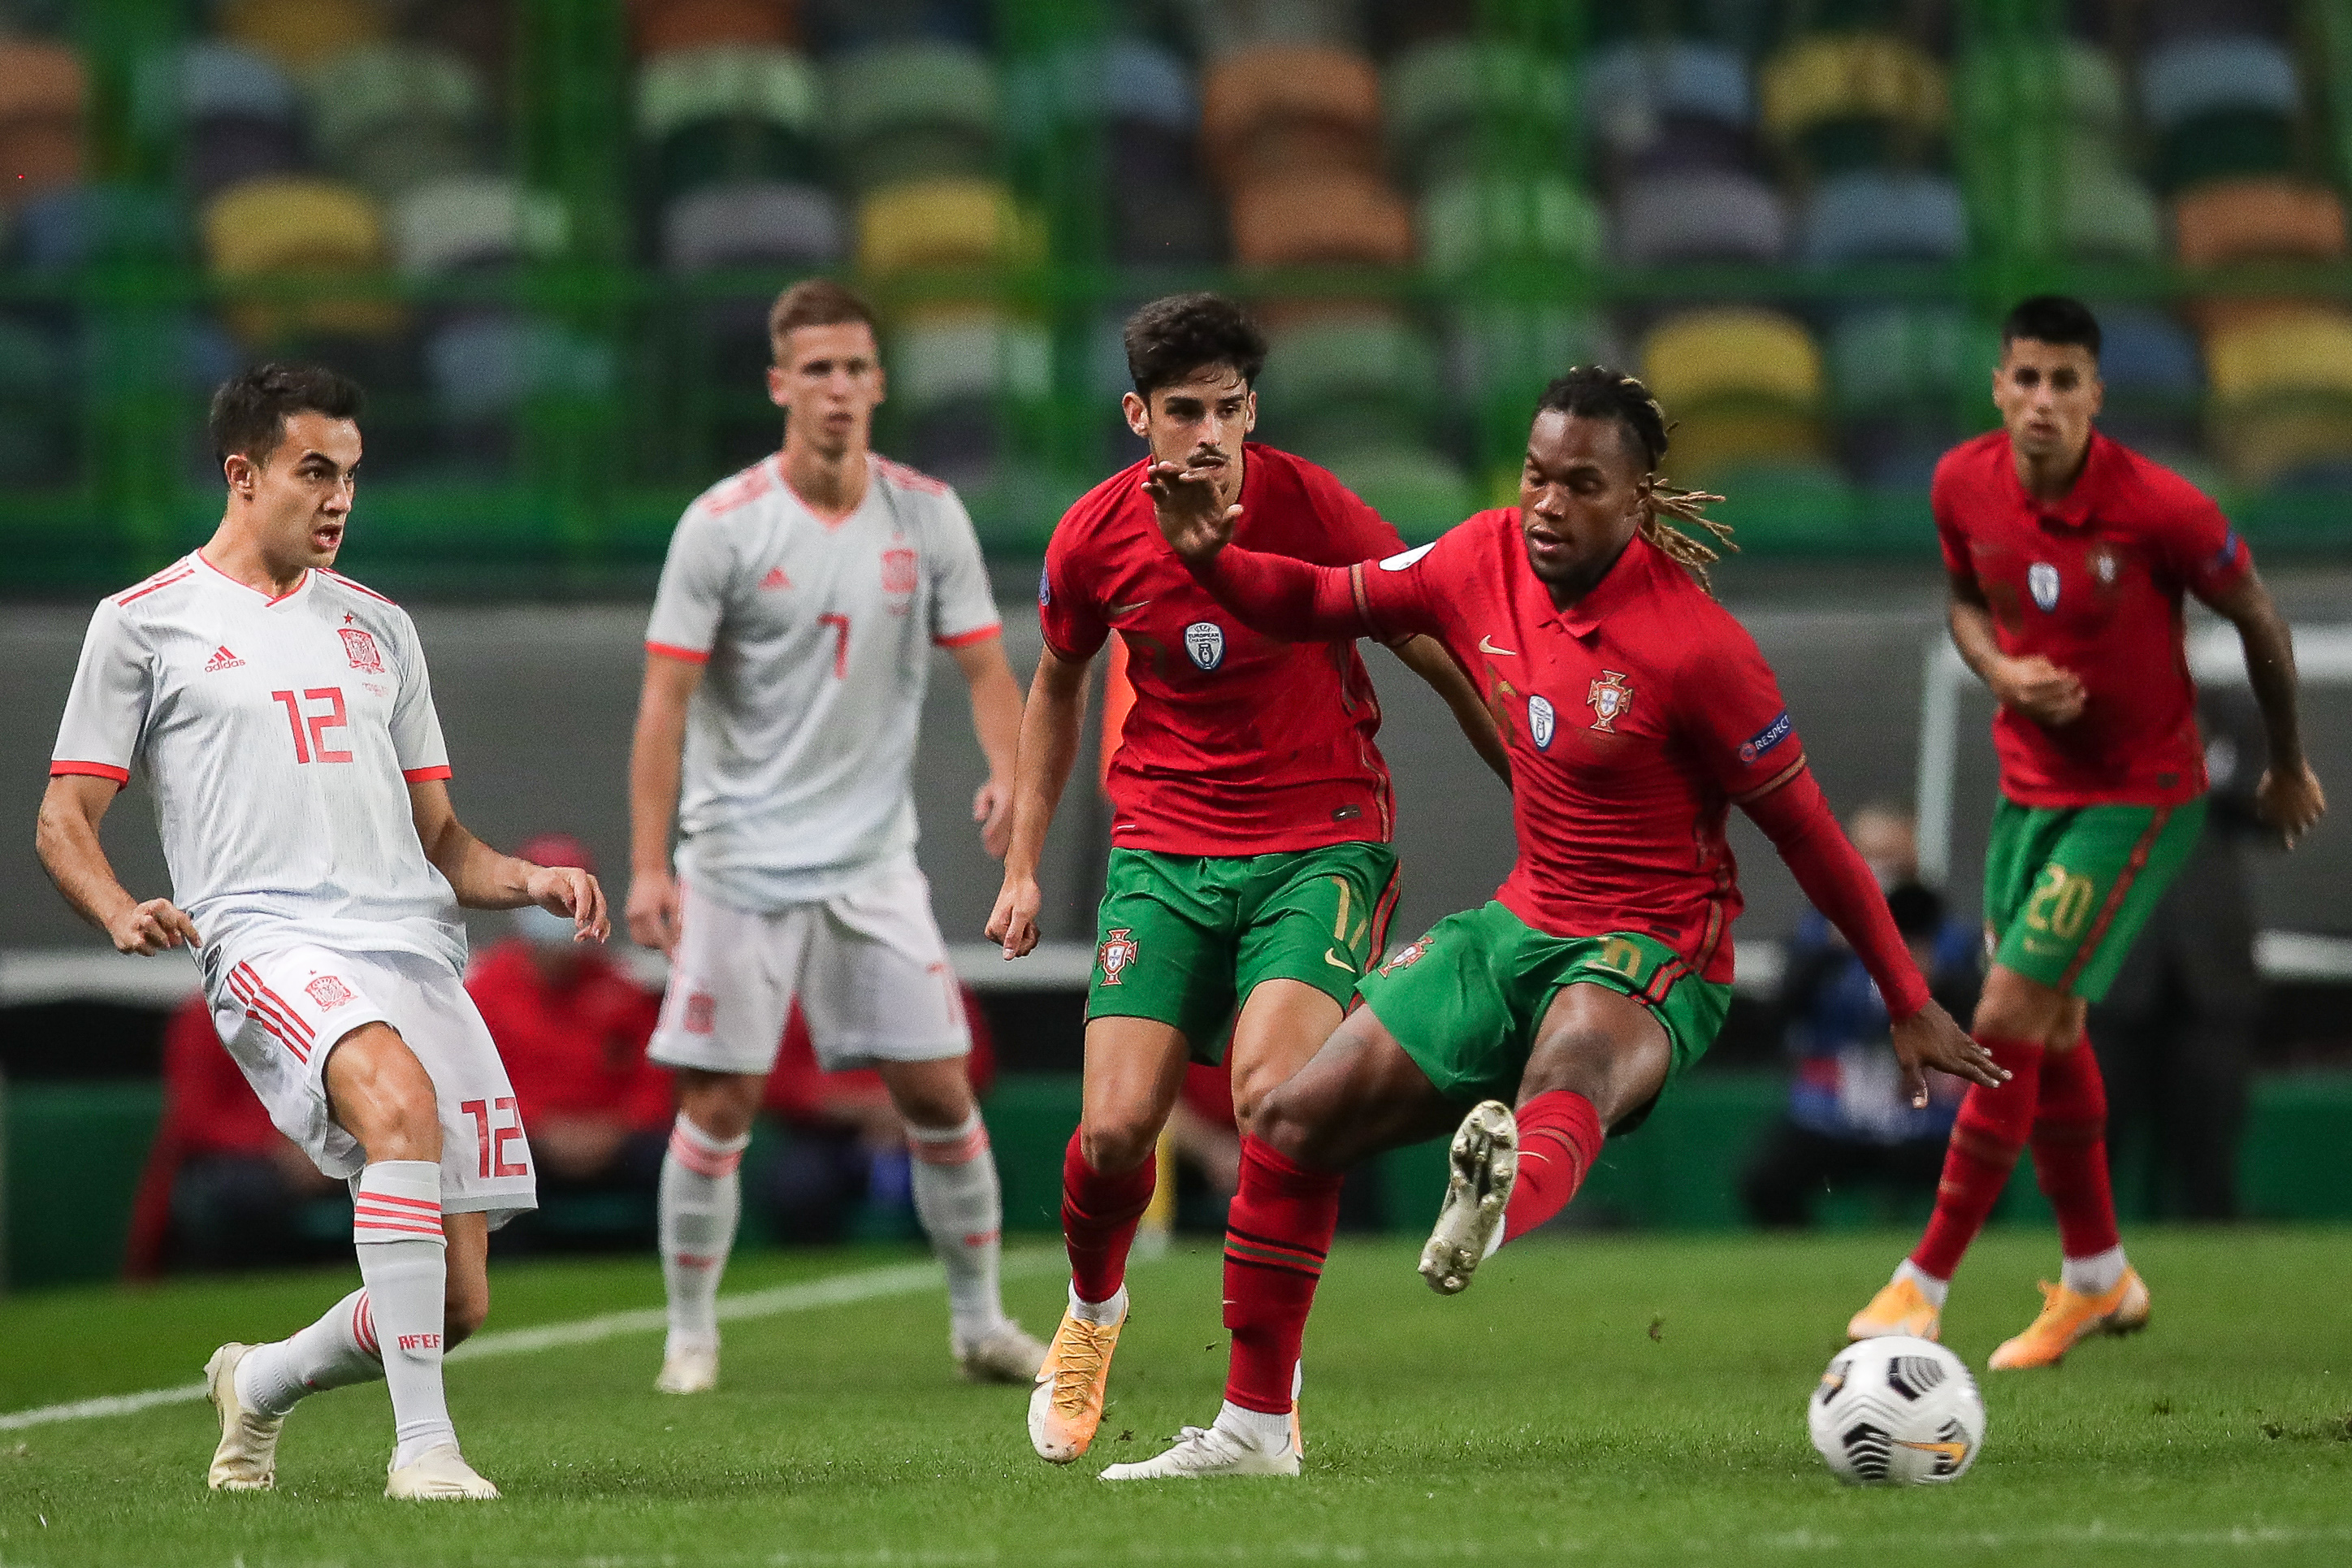 Espanha-Portugal, 0-0: é muito difícil bater a Seleção Nacional